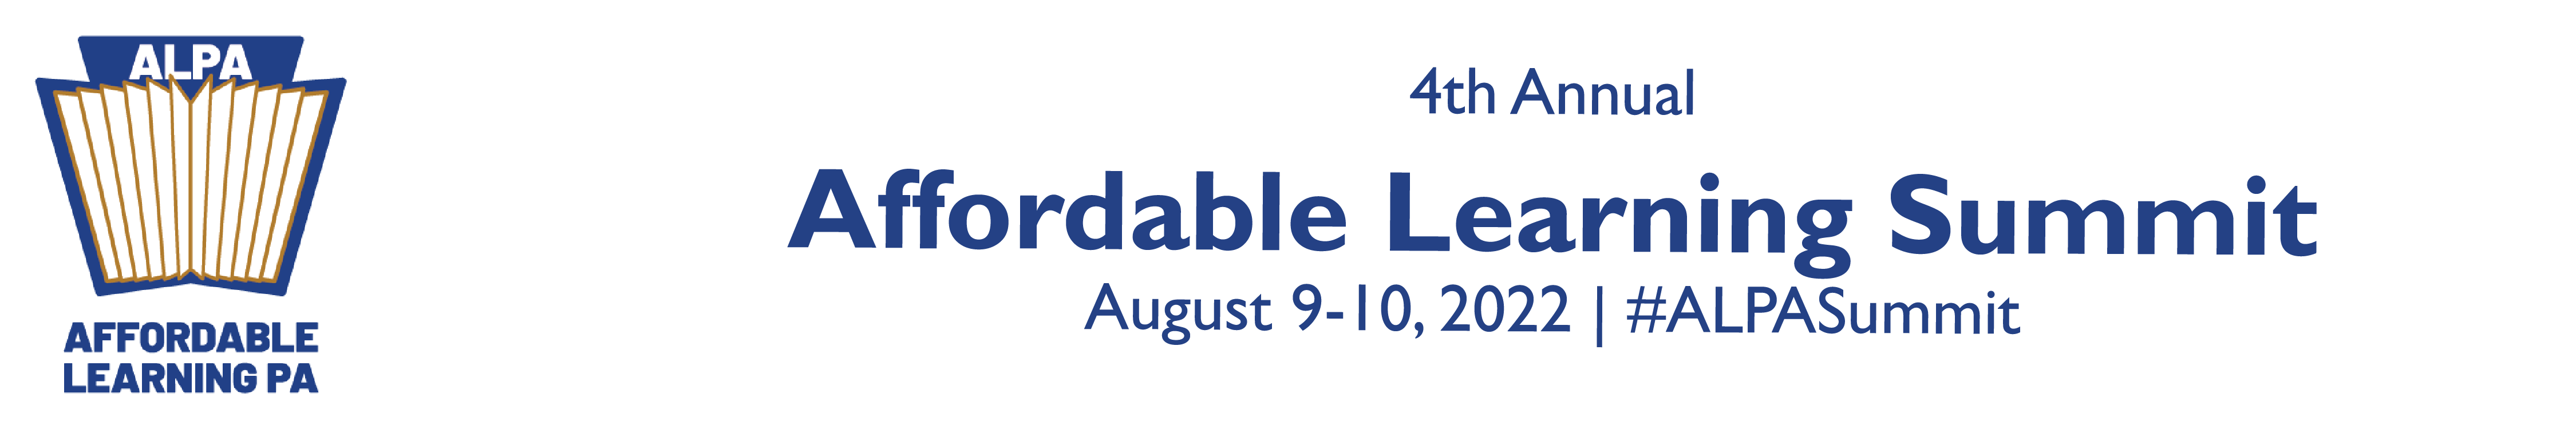 ALPA Summit 2022 | Affordable Learning Summit Logo